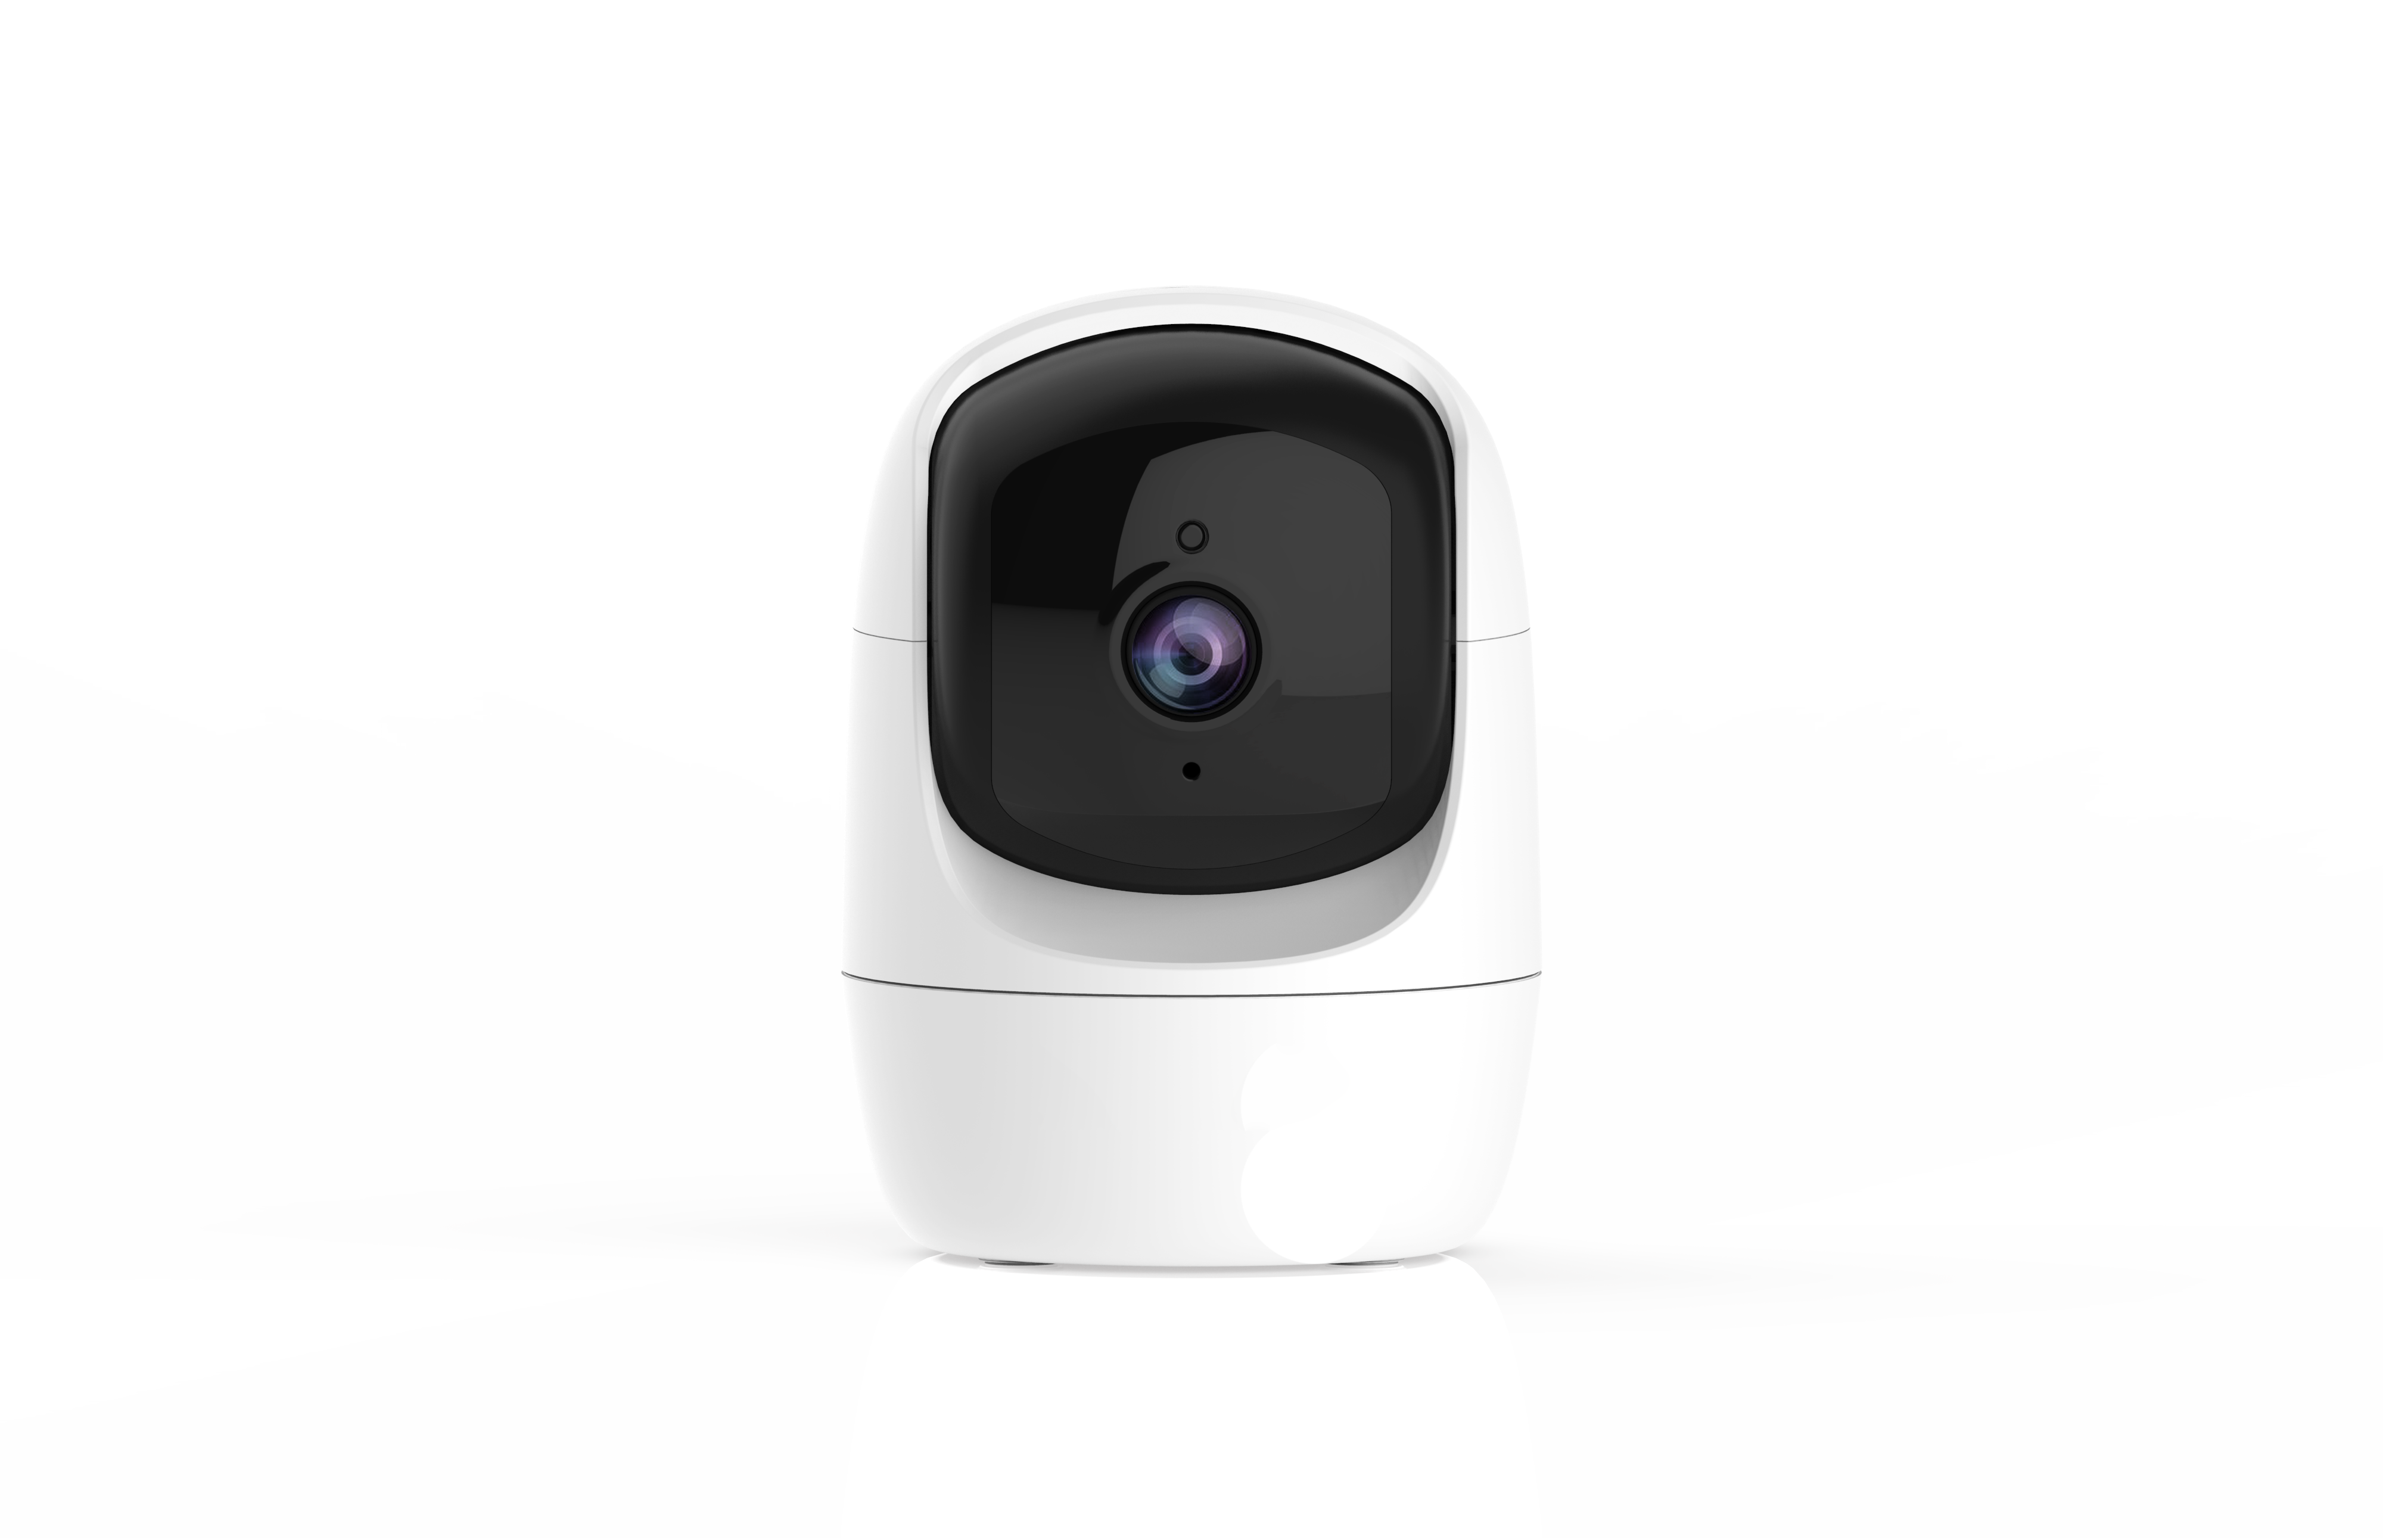 Indoor surveillance camera